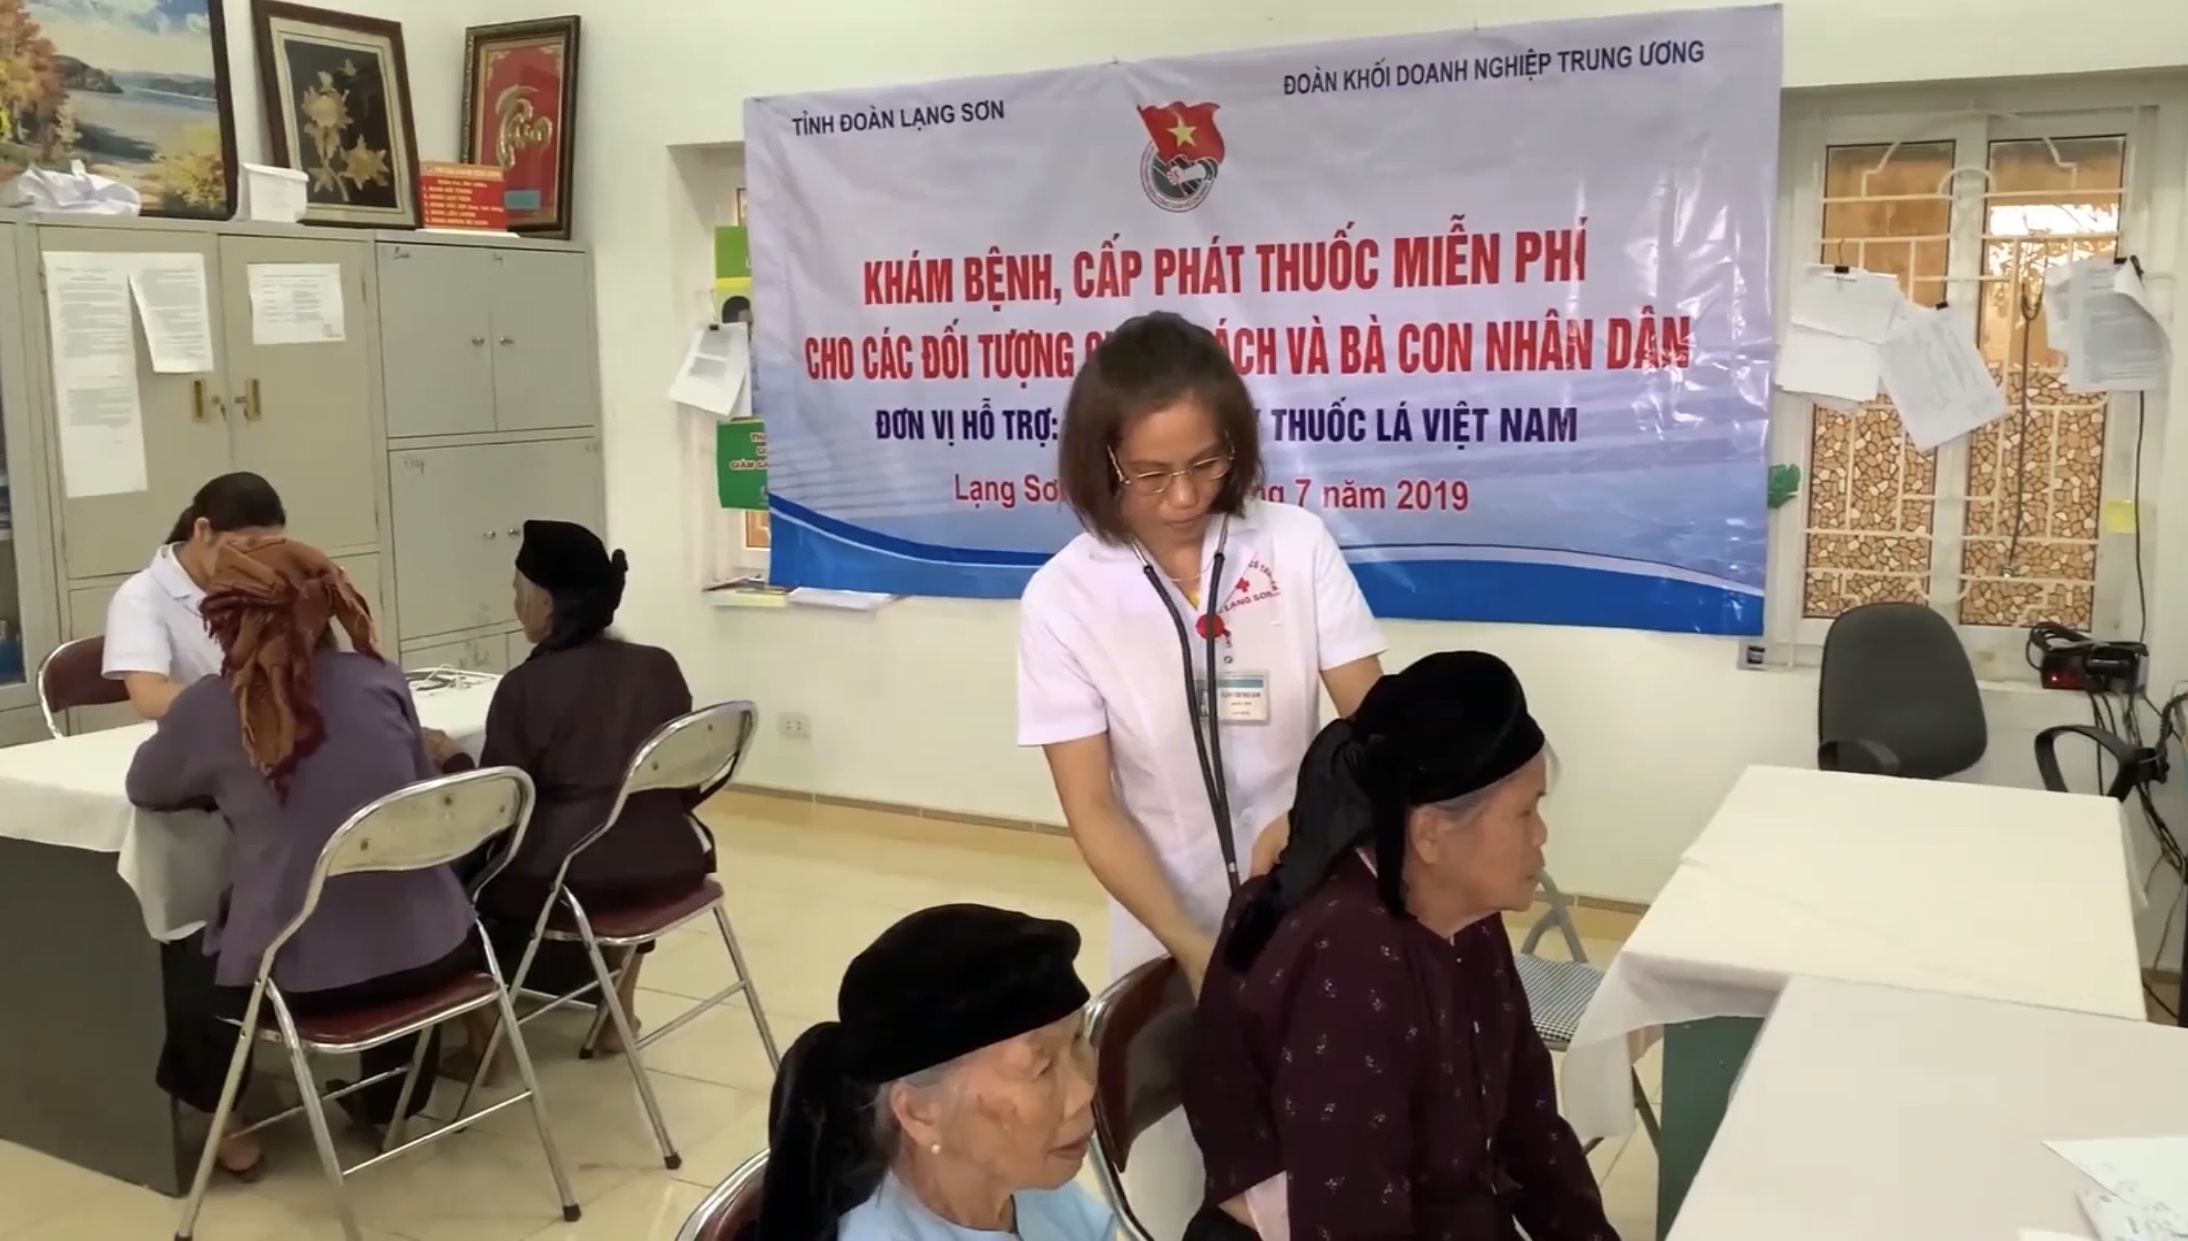 Khám bệnh, phát thuốc miễn phí cho 300 bà con nhân dân tại huyện Văn Lãng và xã Hoàng Đồng, thành phố Lạng Sơn